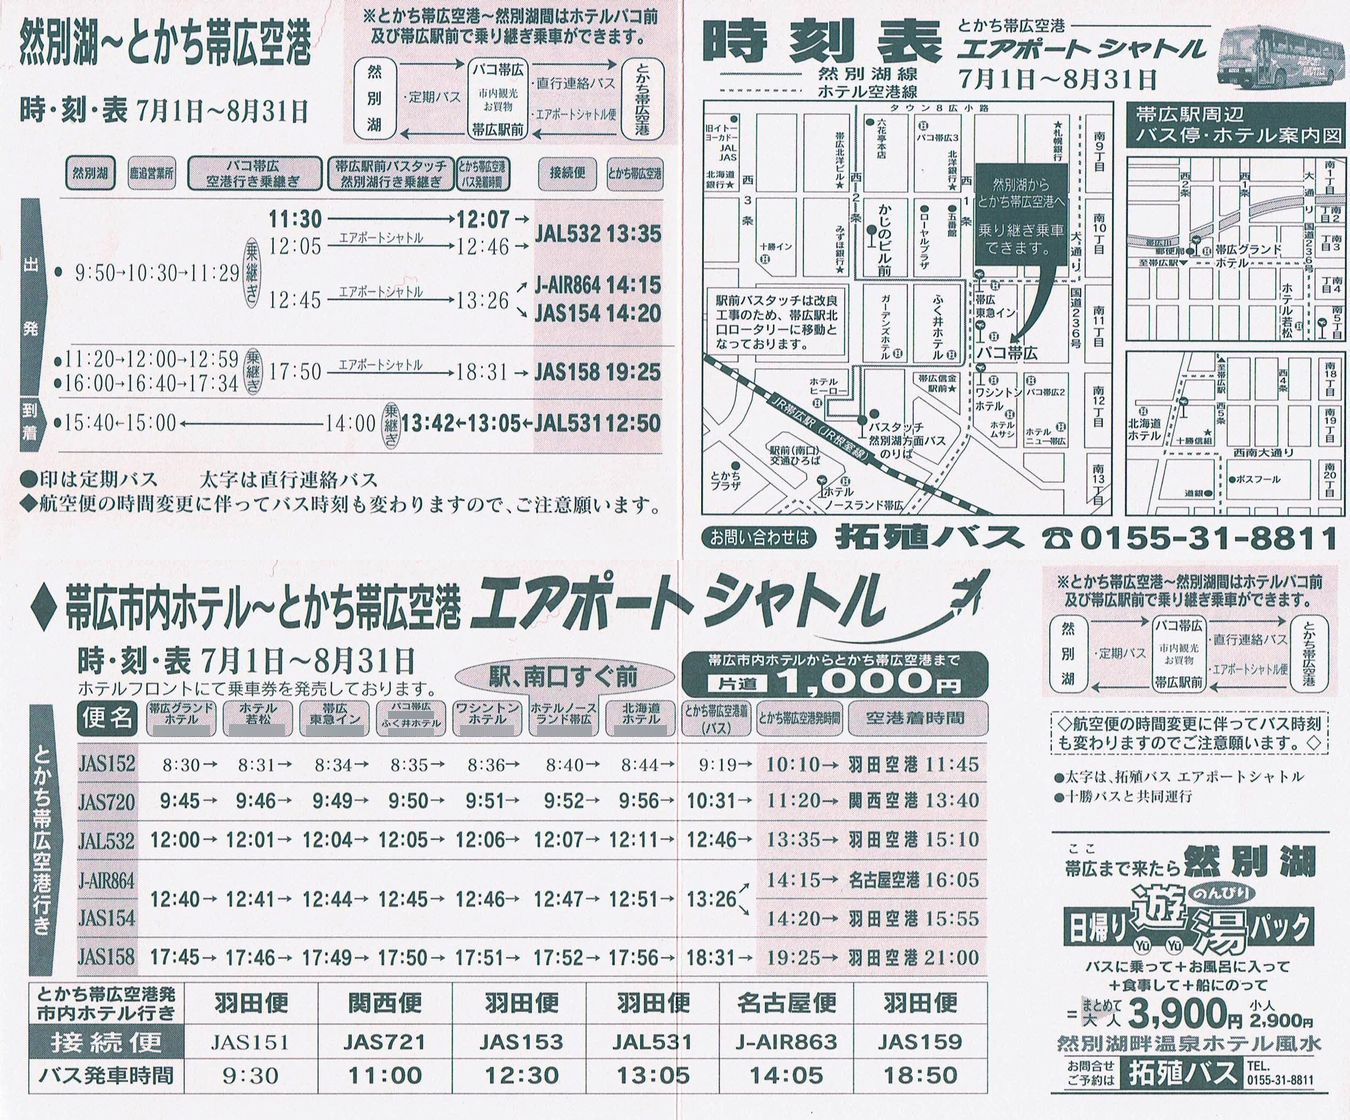 2002-07-01現在_北海道拓殖バス_とかち帯広空港連絡バス時刻表